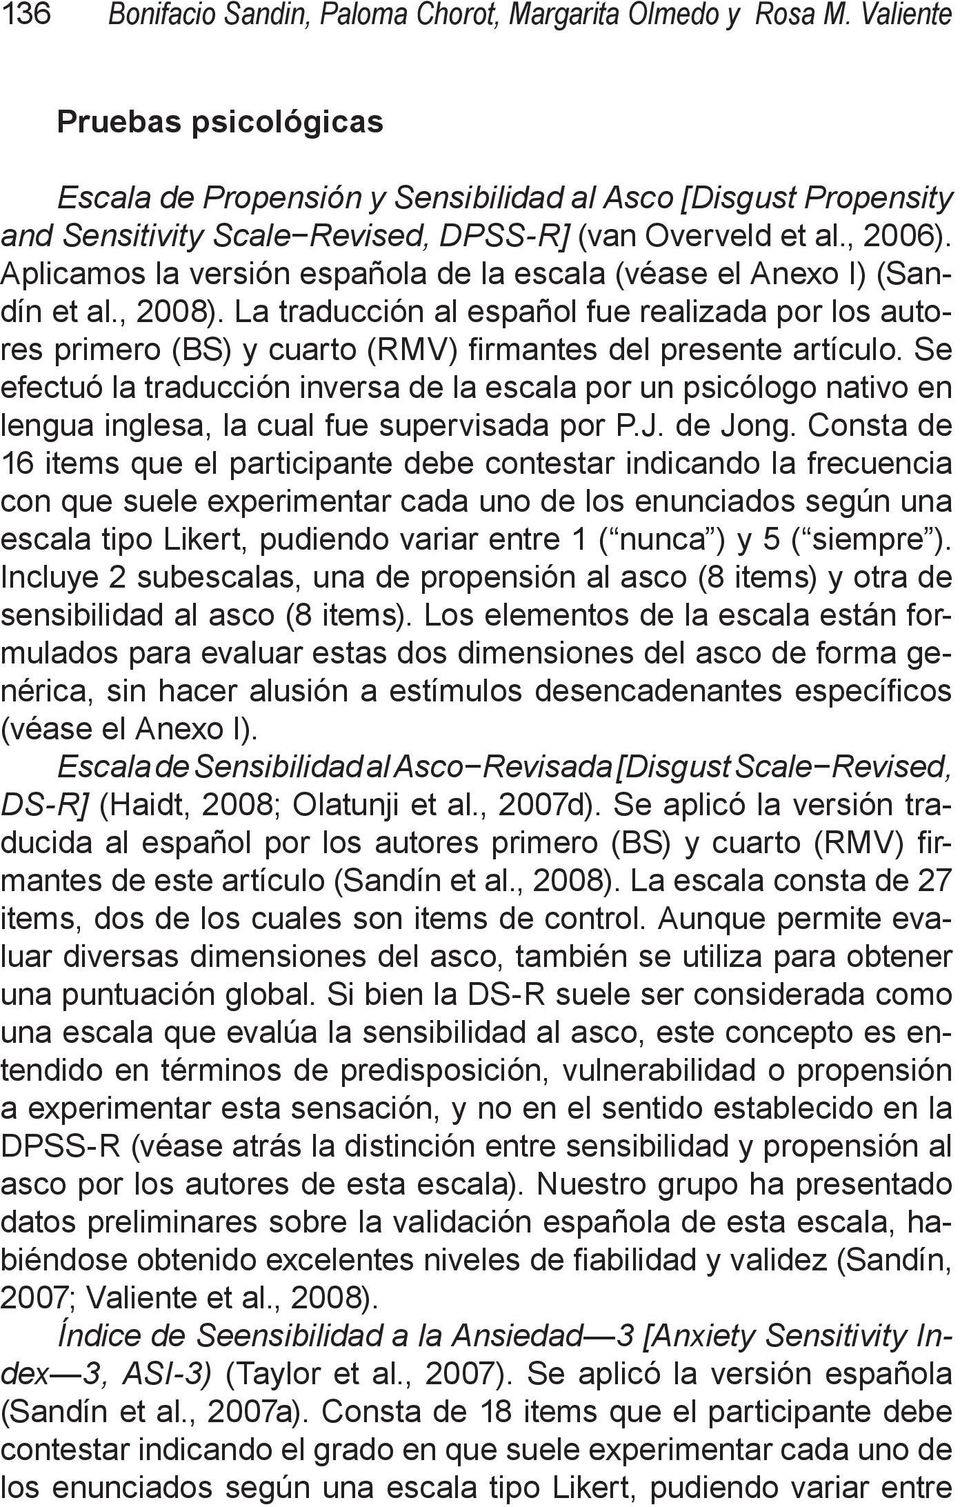 Aplicamos la versión española de la escala (véase el Anexo I) (Sandín et al., 2008). La traducción al español fue realizada por los autores primero (BS) y cuarto (RMV) firmantes del presente artículo.